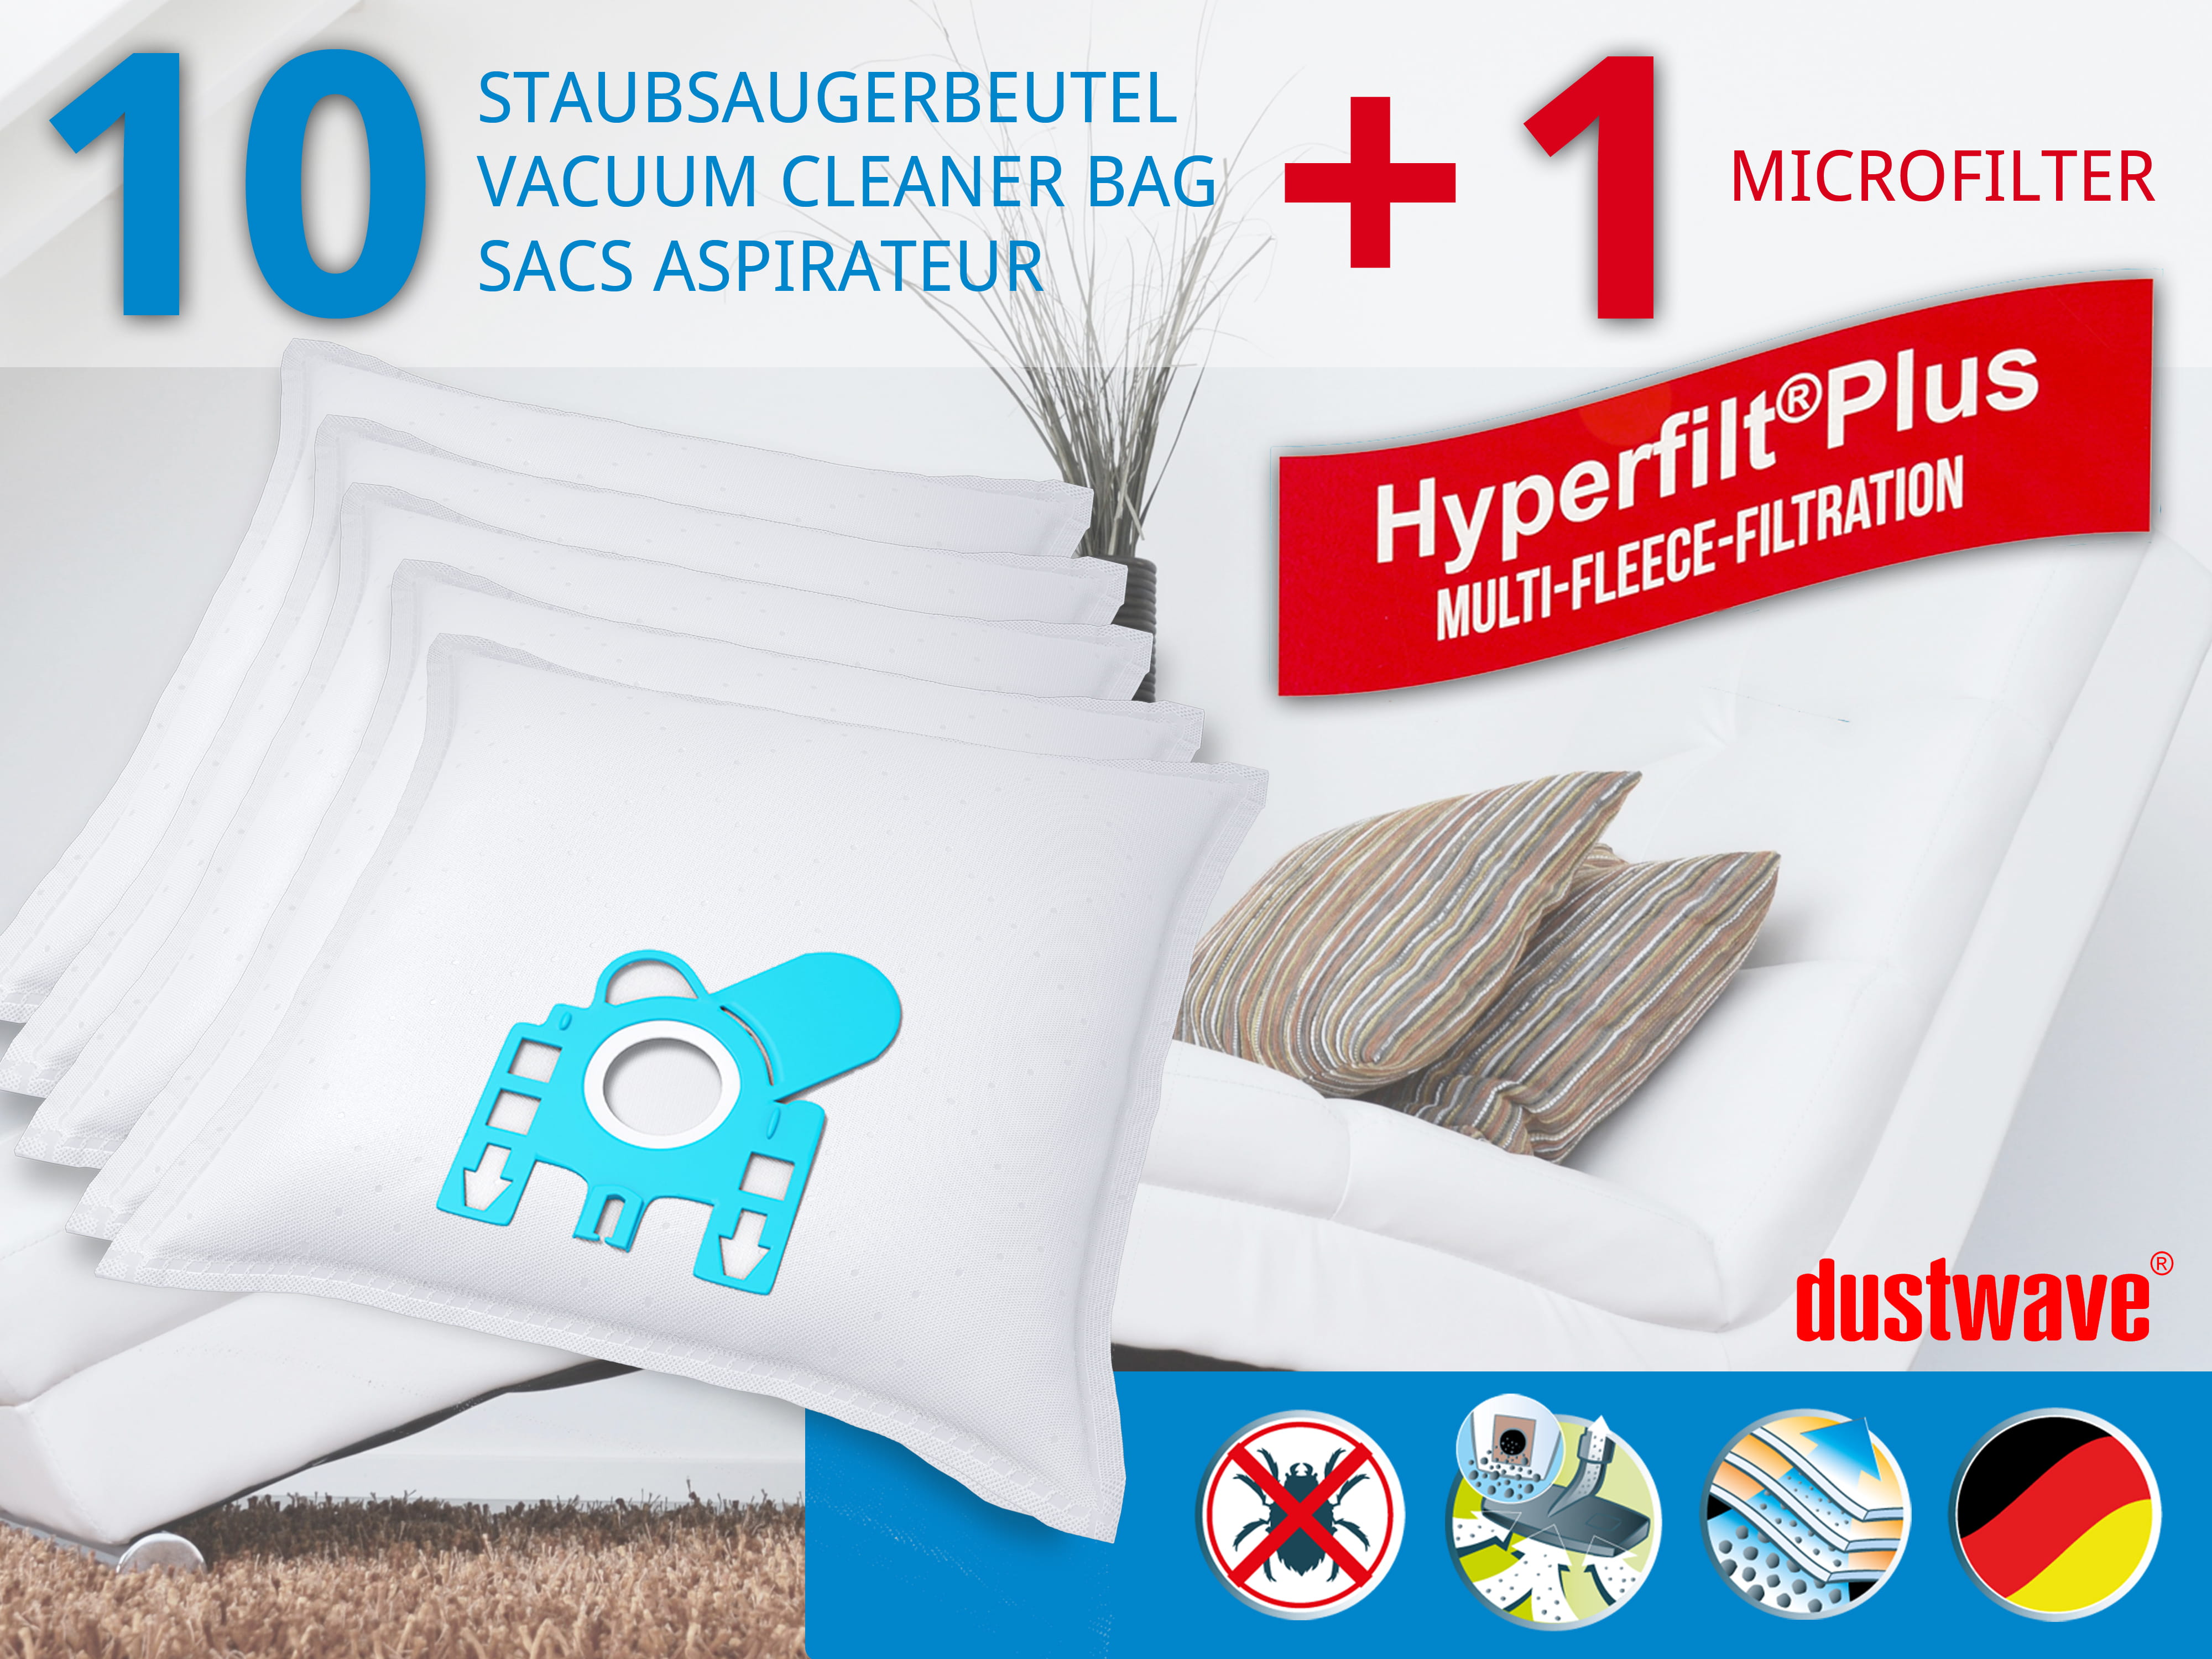 Dustwave® 10 Staubsaugerbeutel für Hoover Micropower SC 155 - hocheffizient, mehrlagiges Mikrovlies mit Hygieneverschluss - Made in Germany